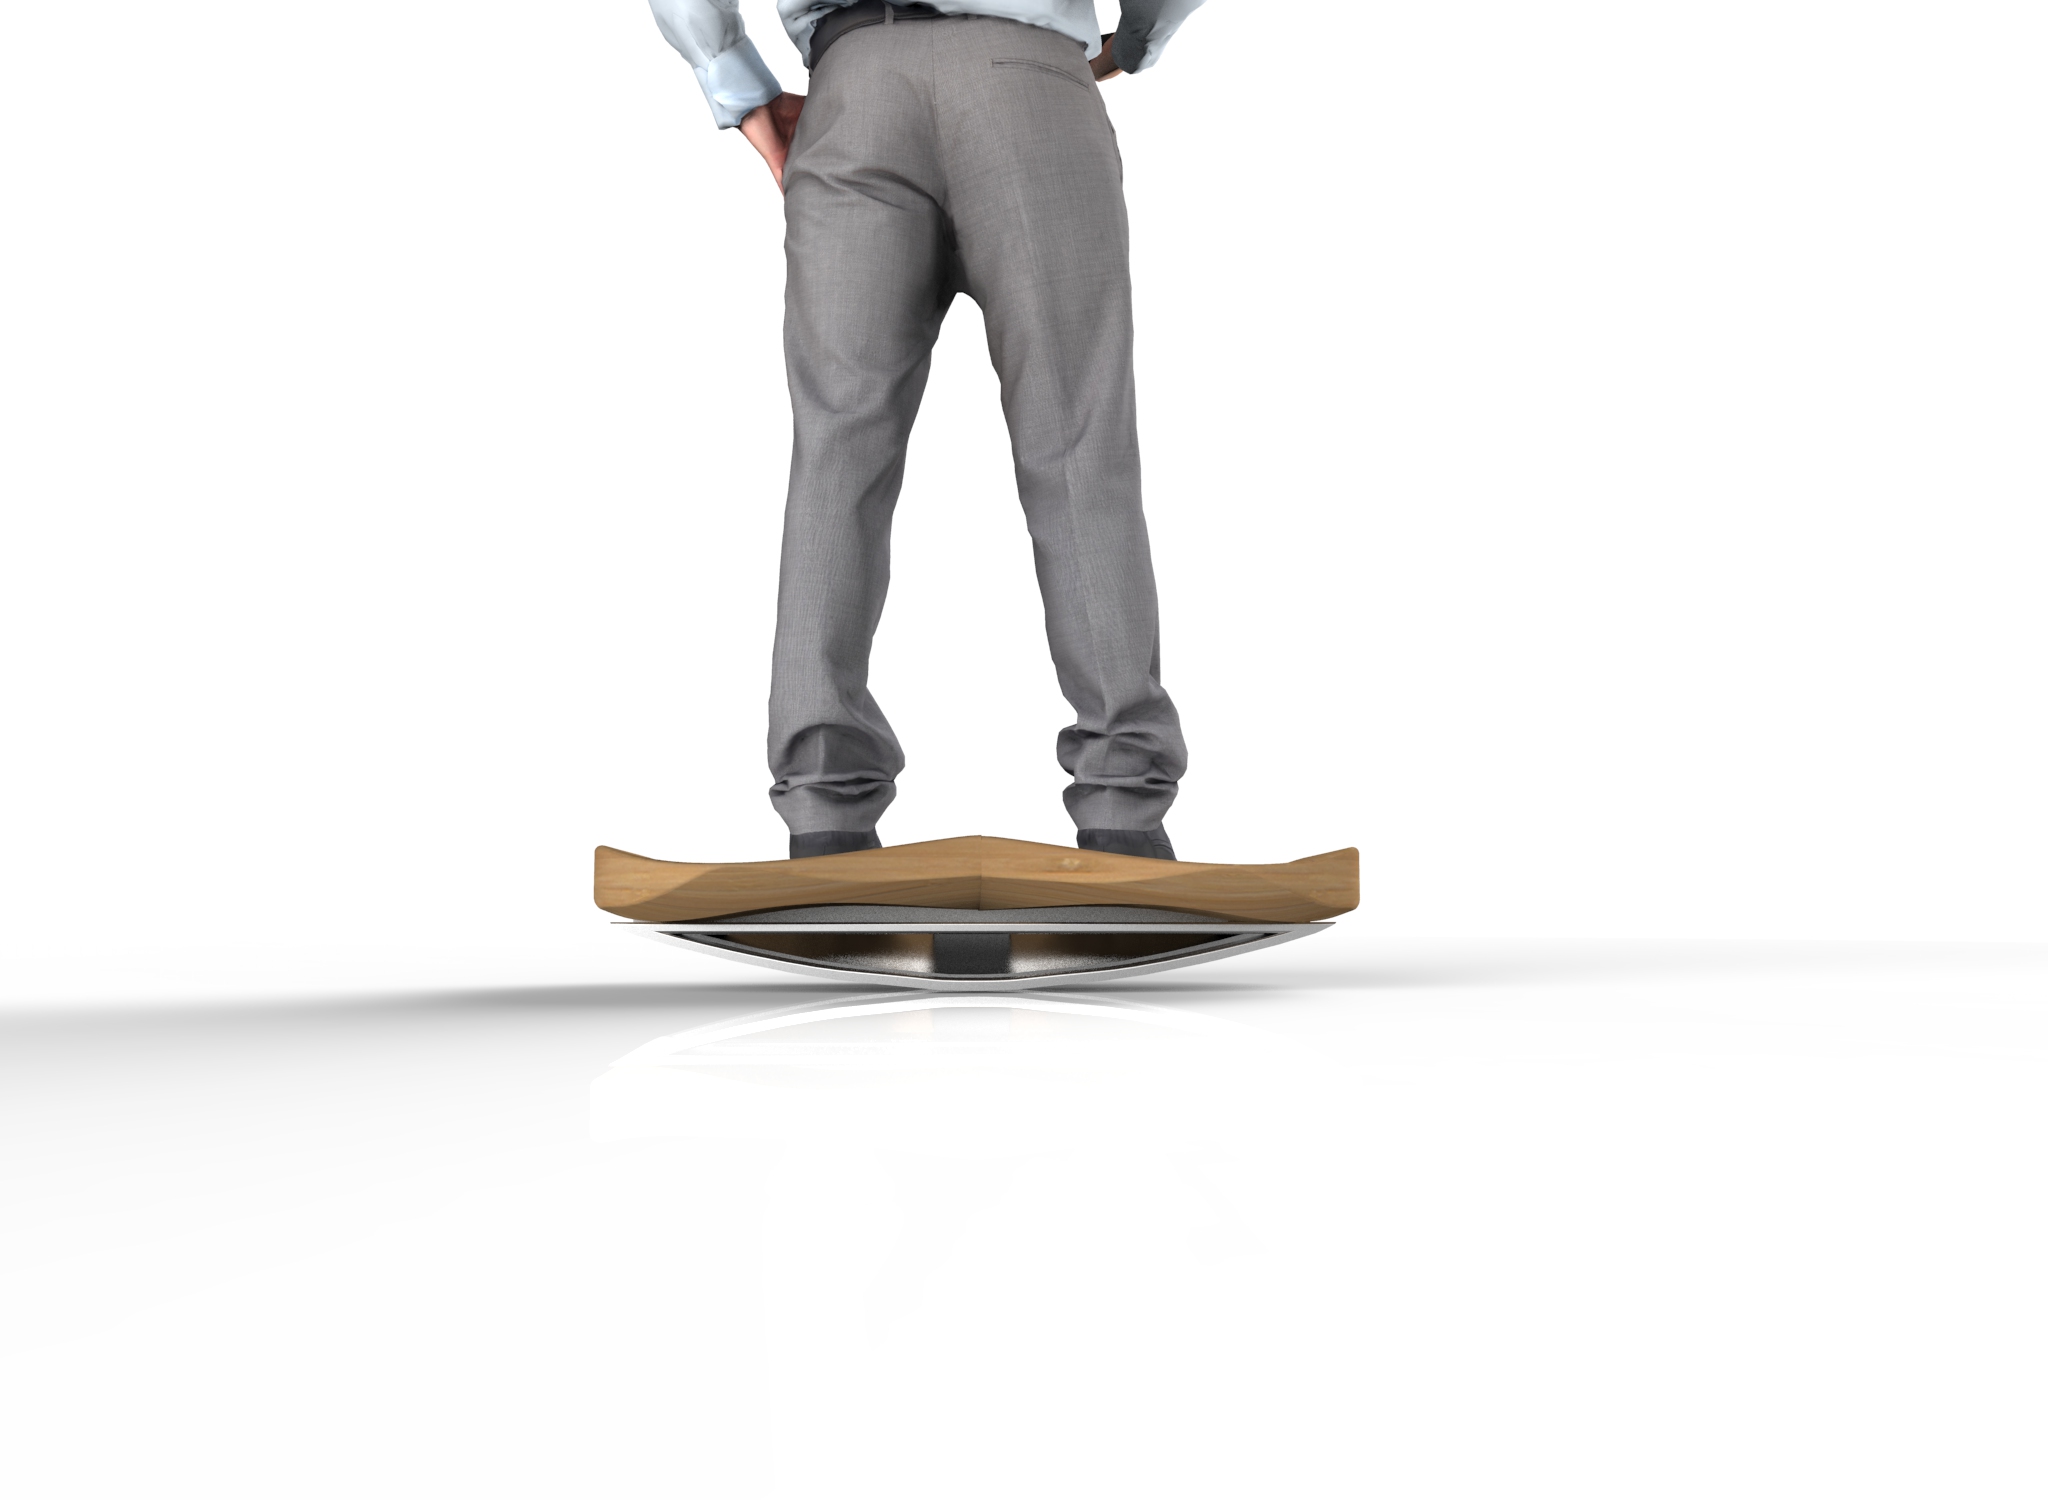 Curvilinear Balance Board Concept